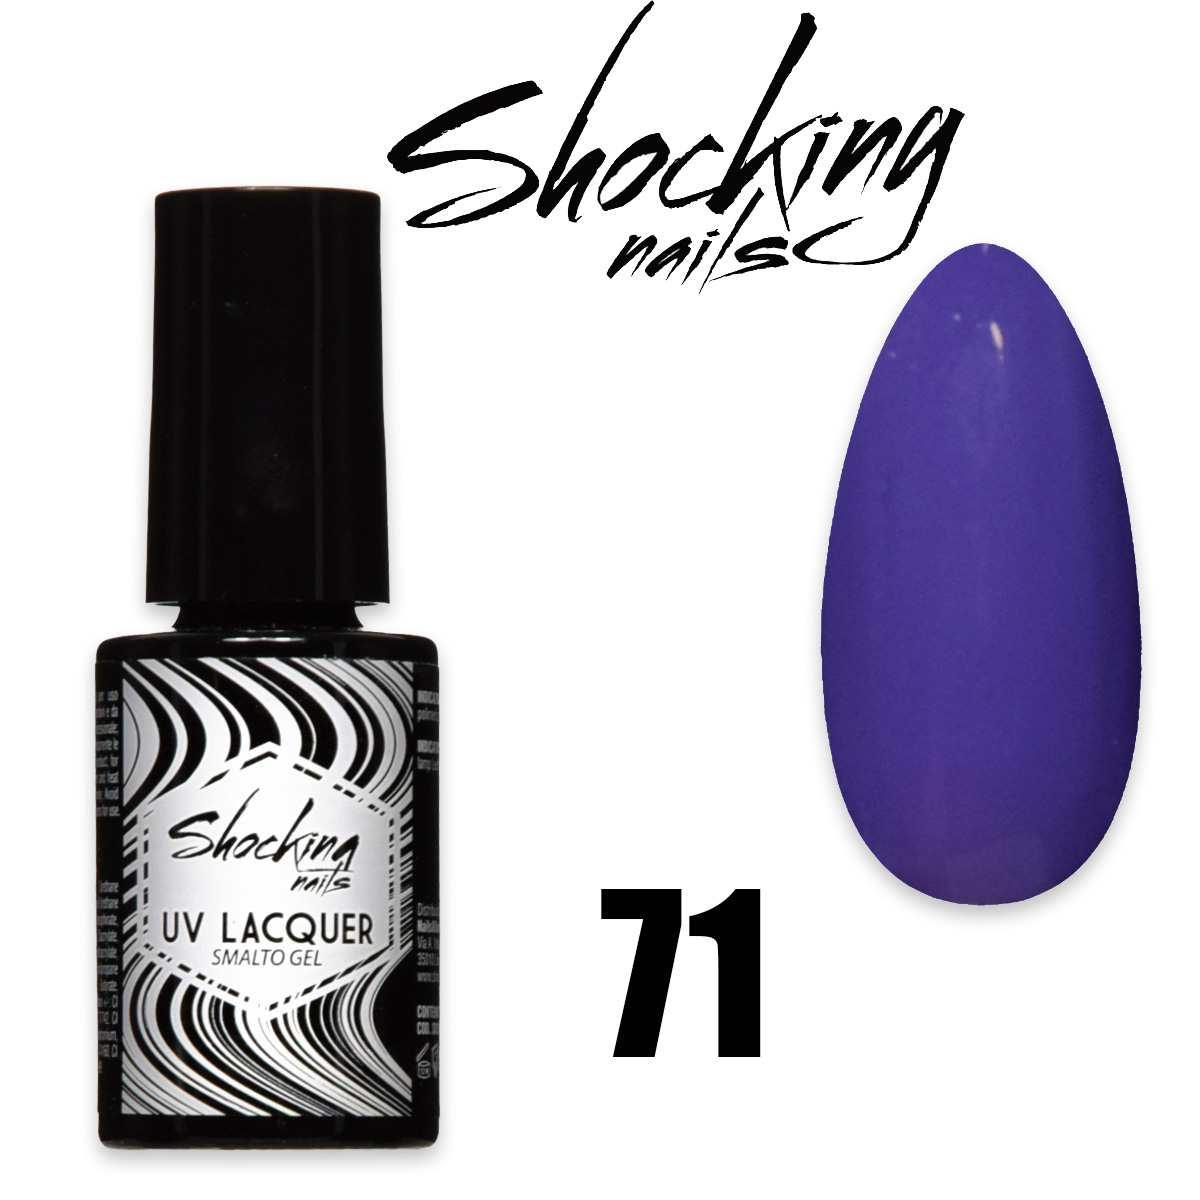 Shocking nails uv lacquer 71 smalto semipermanente gel